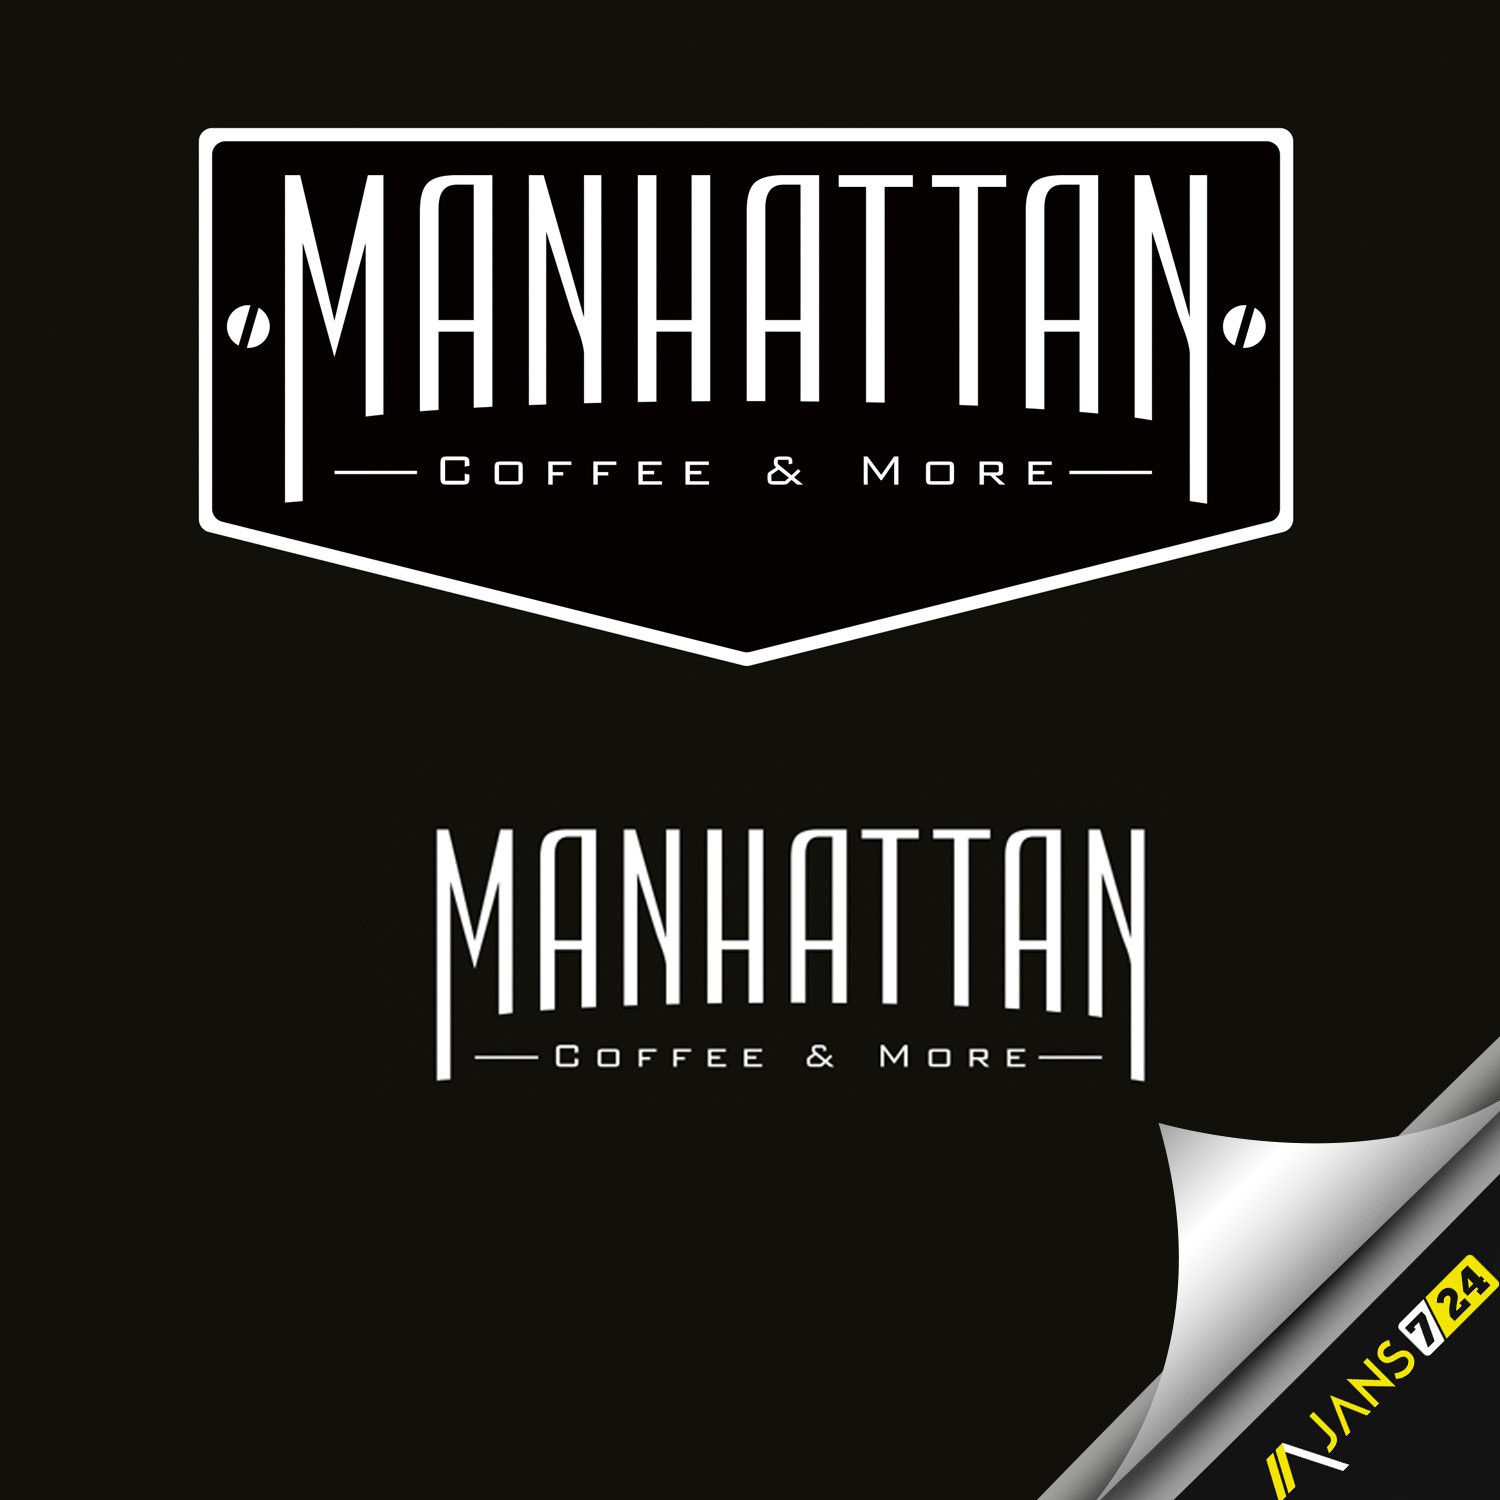 Manhattan Cafe Laounge logo tasarımı örneği.